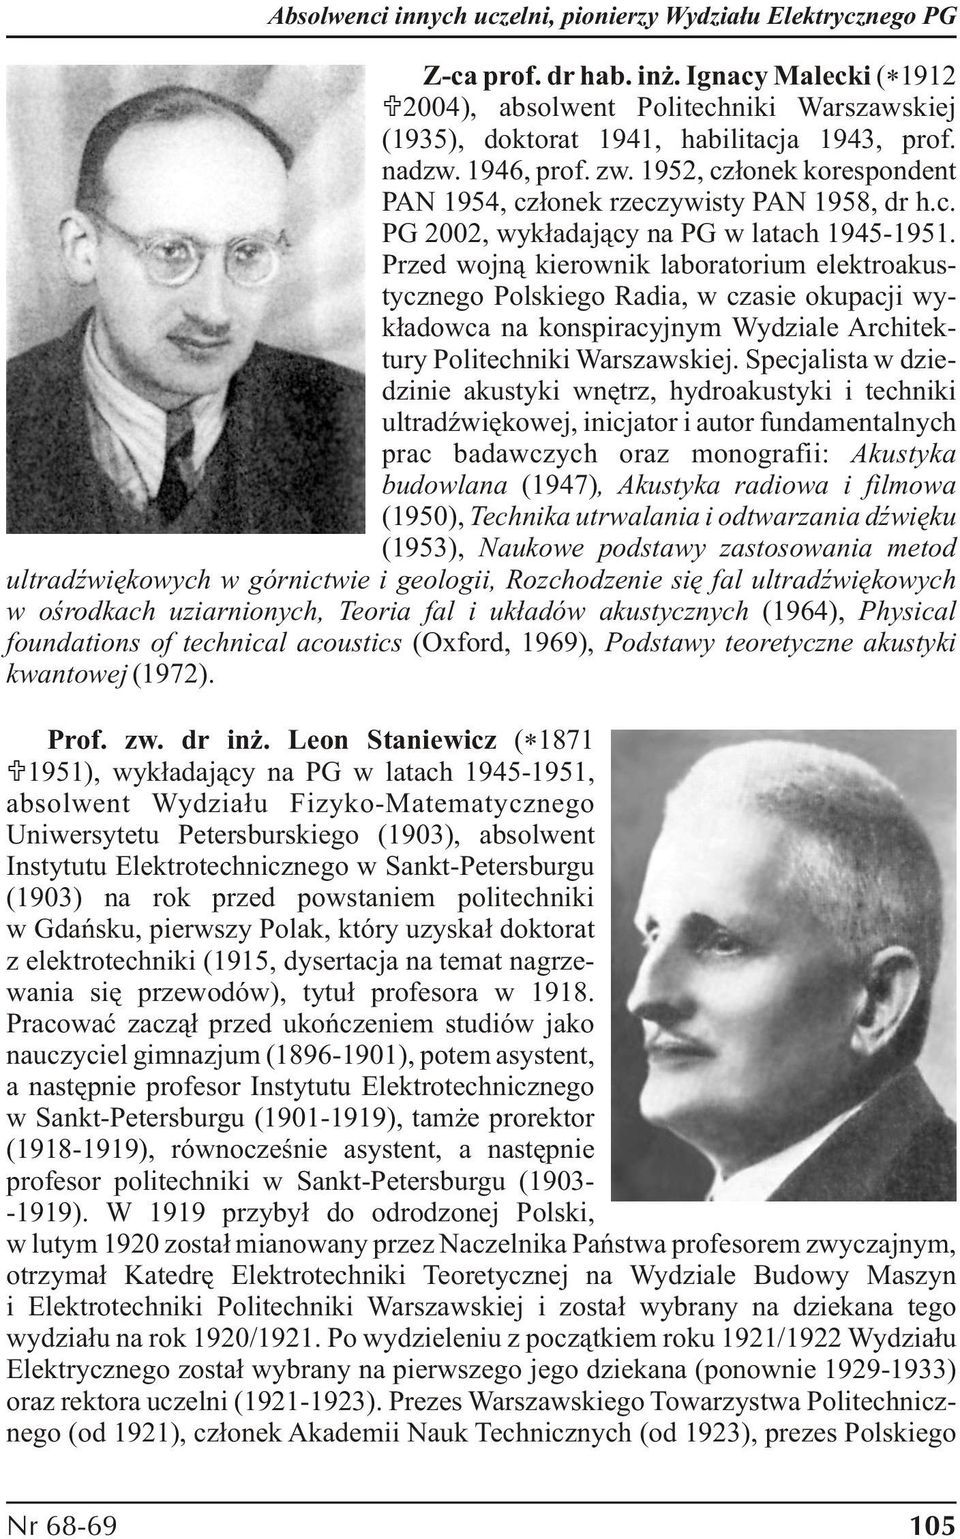 Przed wojną kierownik laboratorium elektroakustycznego Polskiego Radia, w czasie okupacji wykładowca na konspiracyjnym Wydziale Architektury Politechniki Warszawskiej.